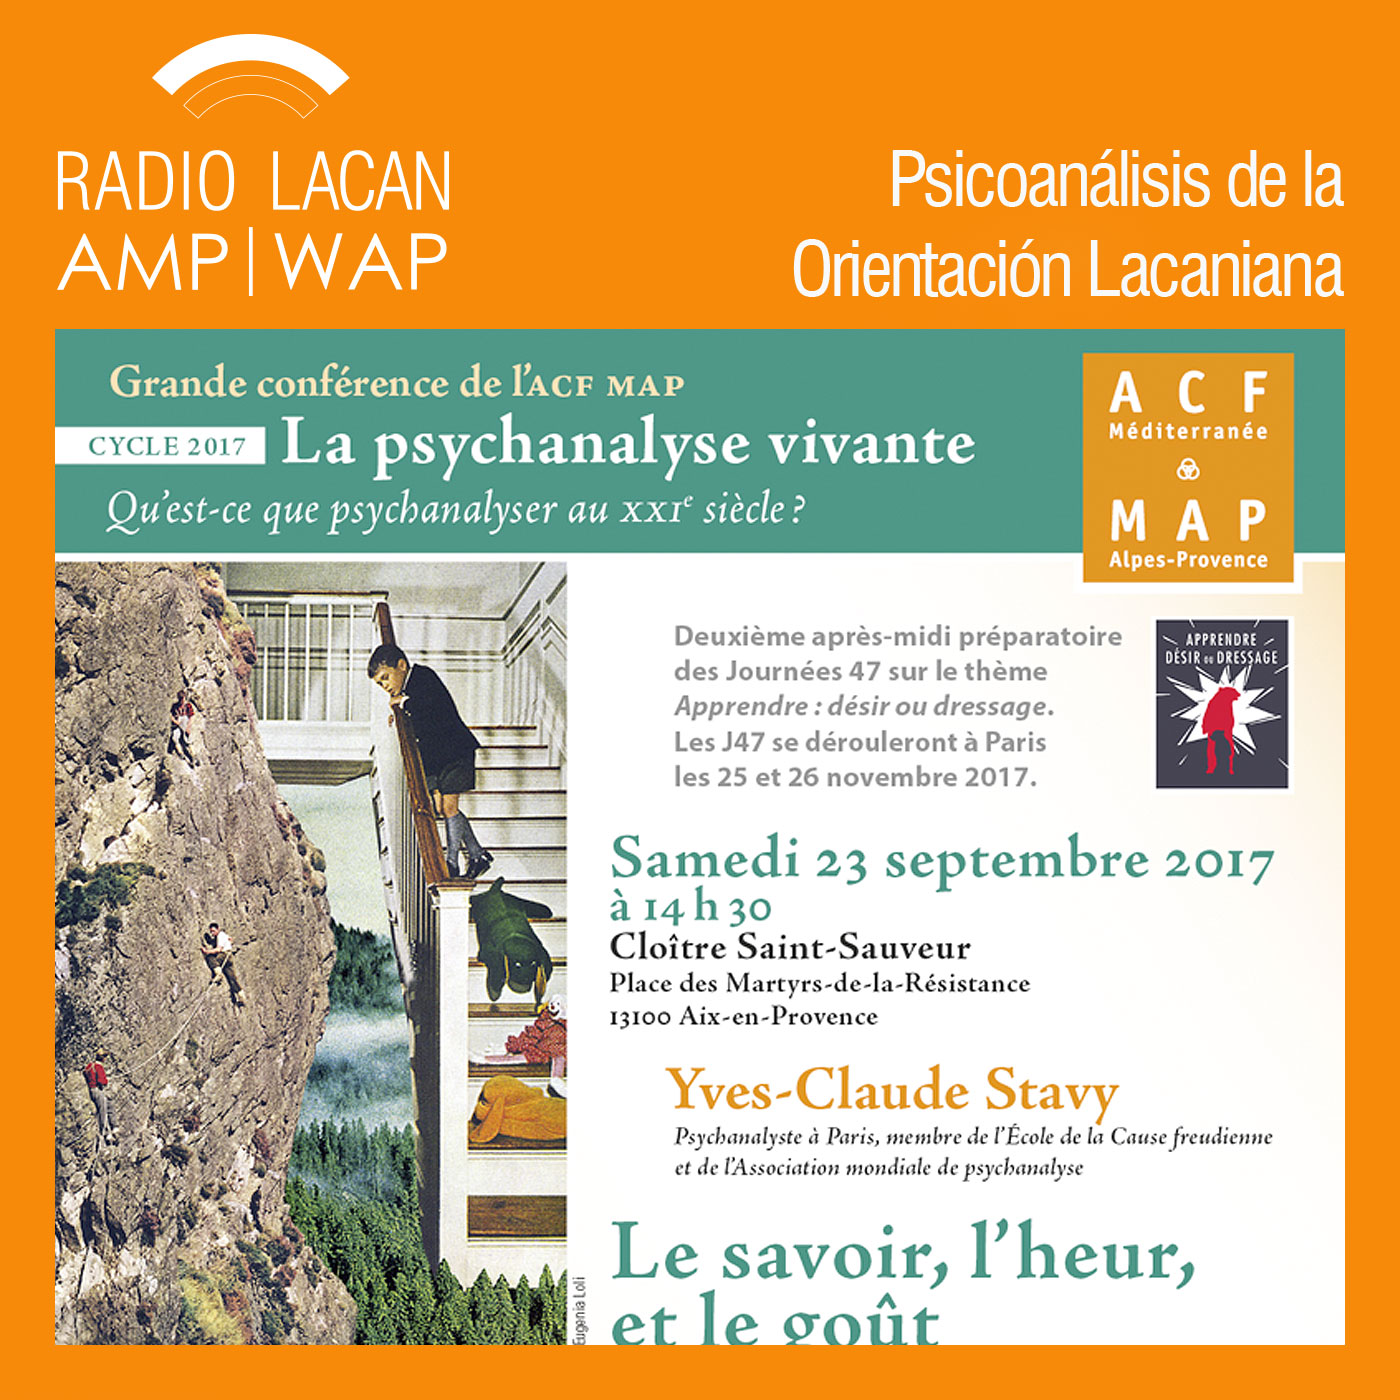 Conferencia de Yves-Claude Stavy en Aix- en- Provence: “El saber, la dicha y el gusto”. Parte 1. - Episodio 1